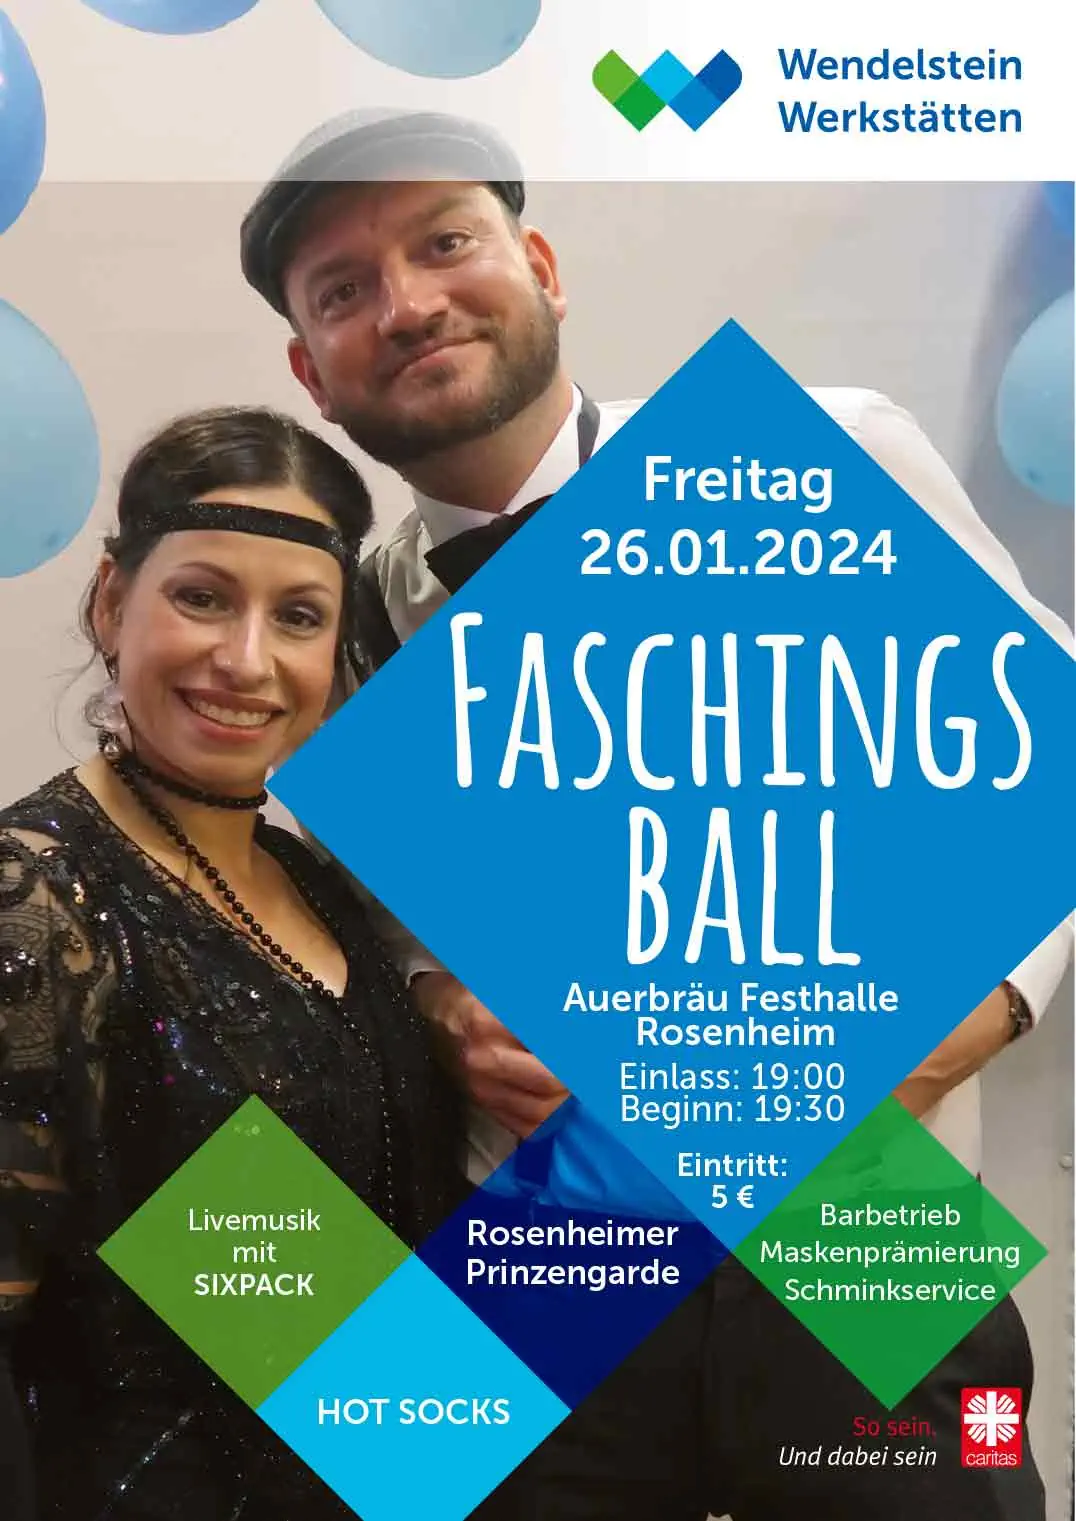 Caritas Faschingsball 2024 - Auerbräu Festhalle Rosenheim